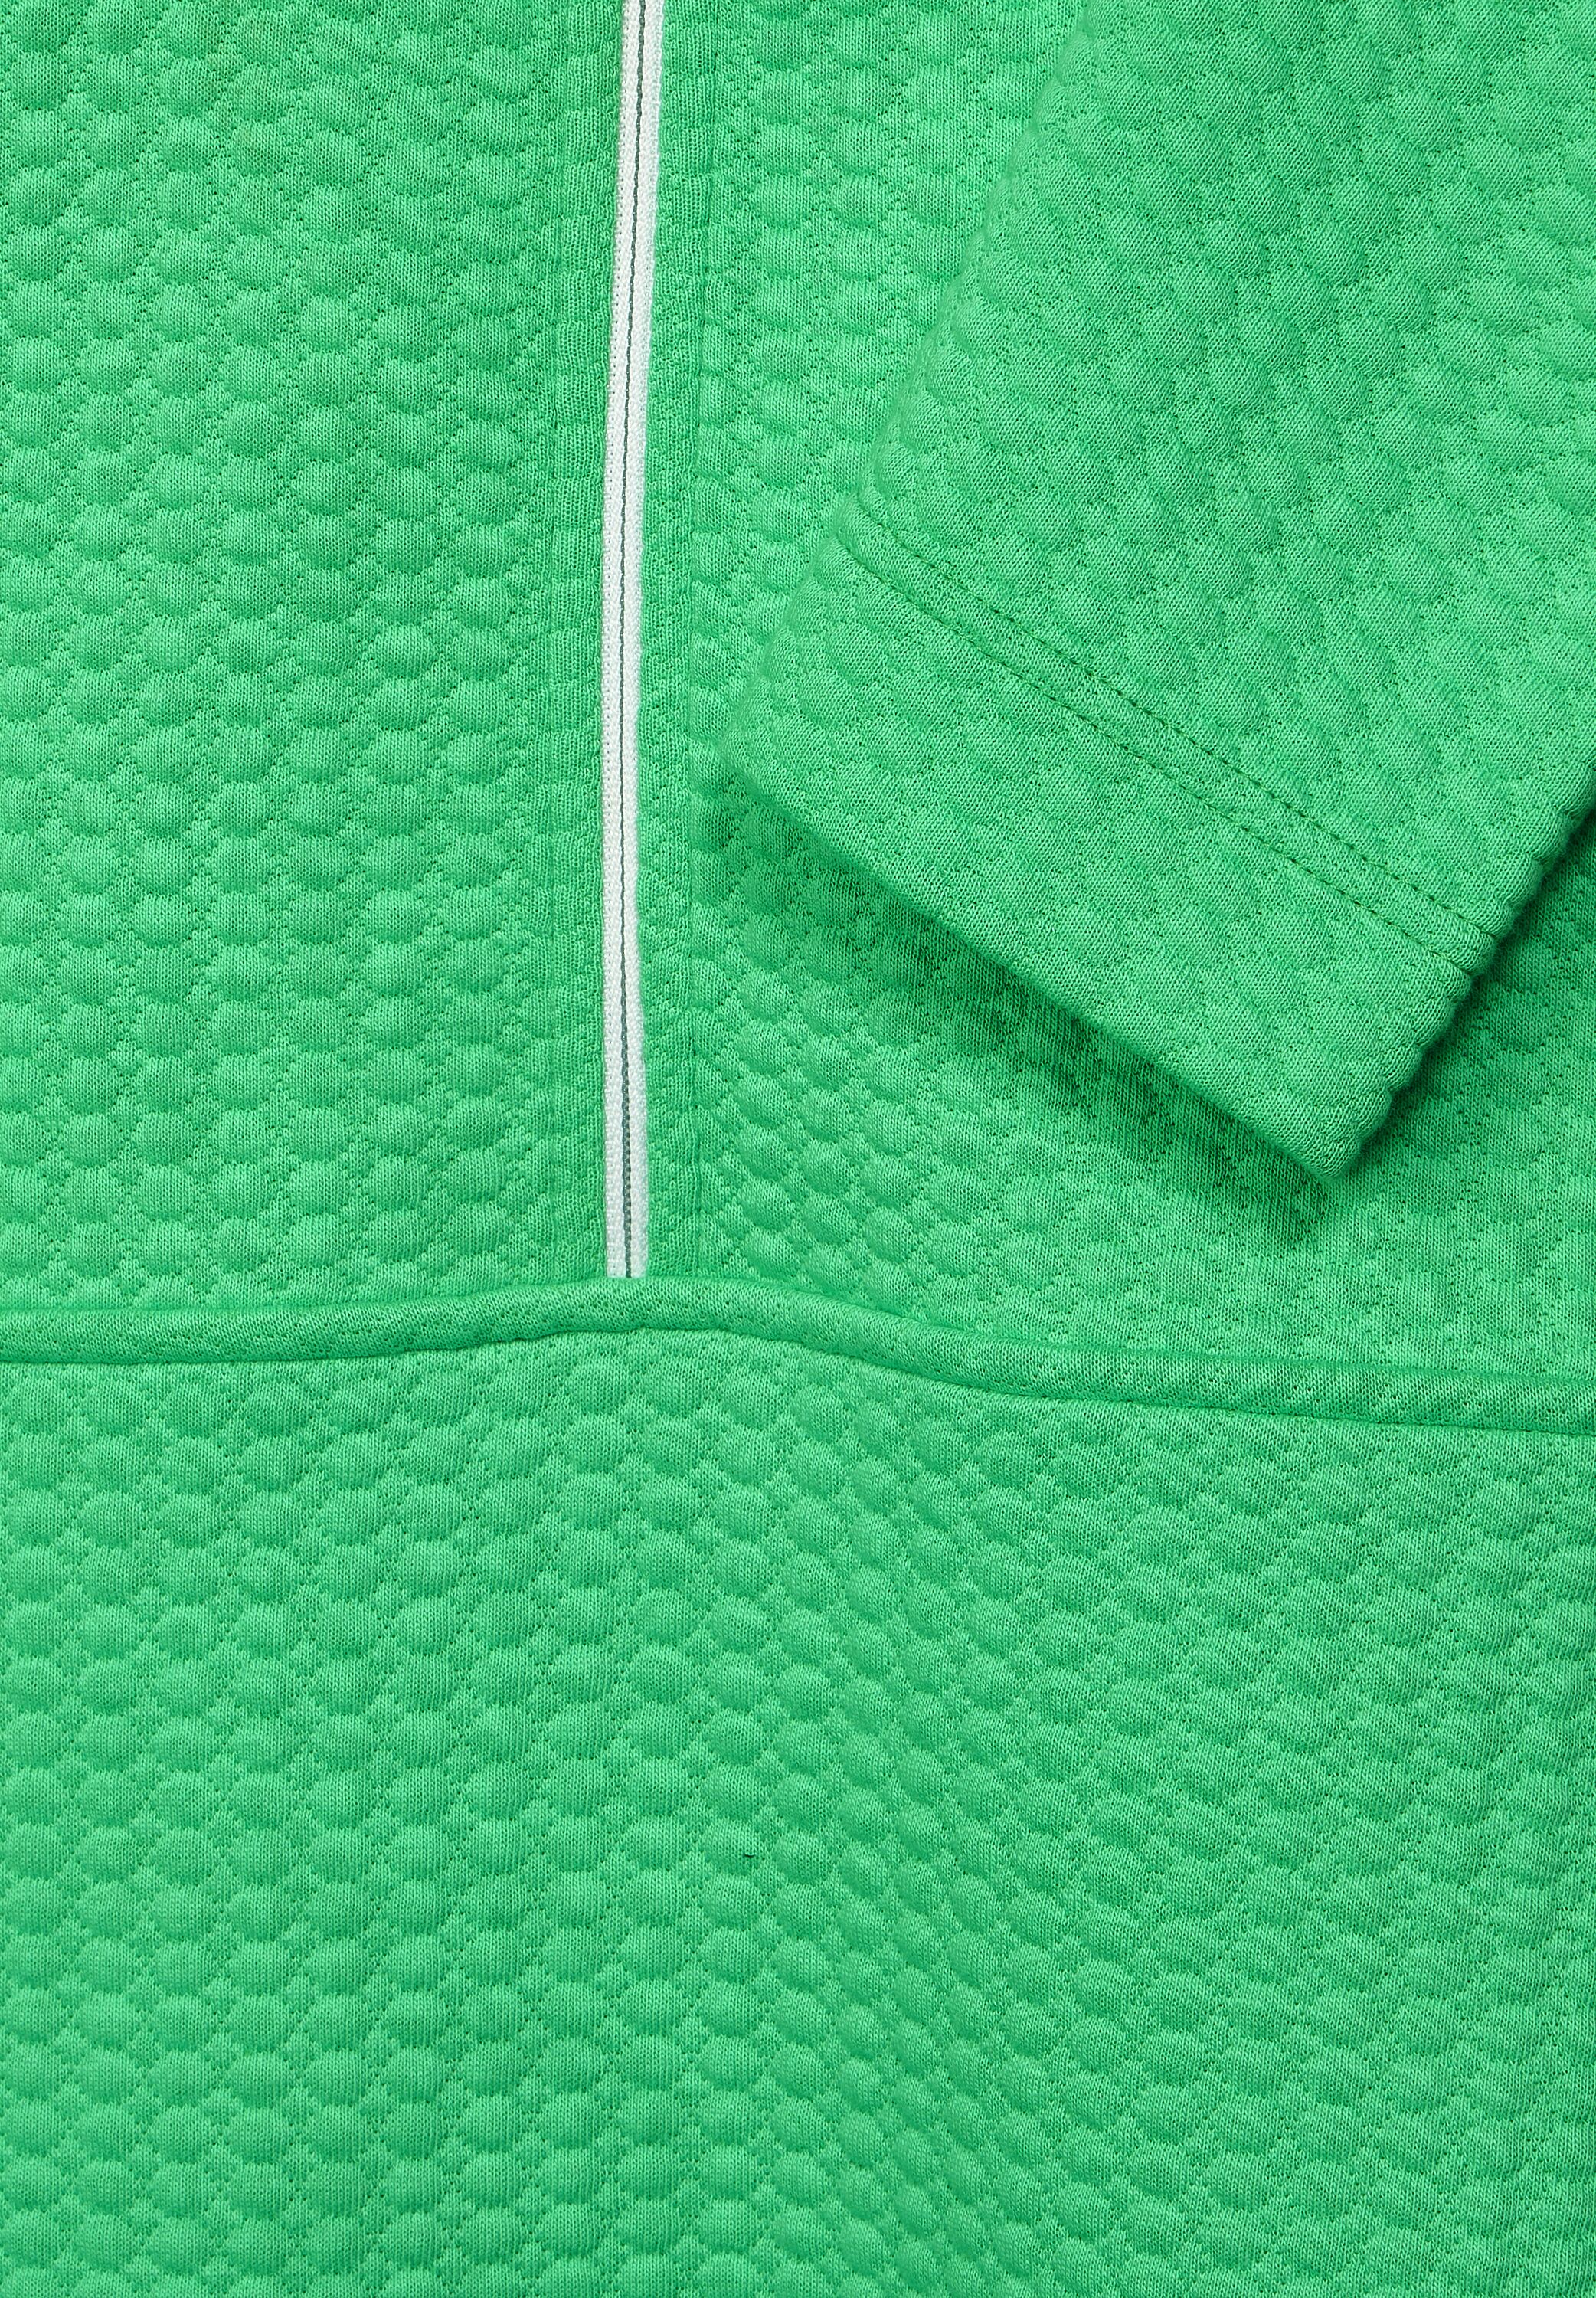 CECIL Sweatshirt in Smash Green im SALE reduziert B302272-14617 - CONCEPT  Mode